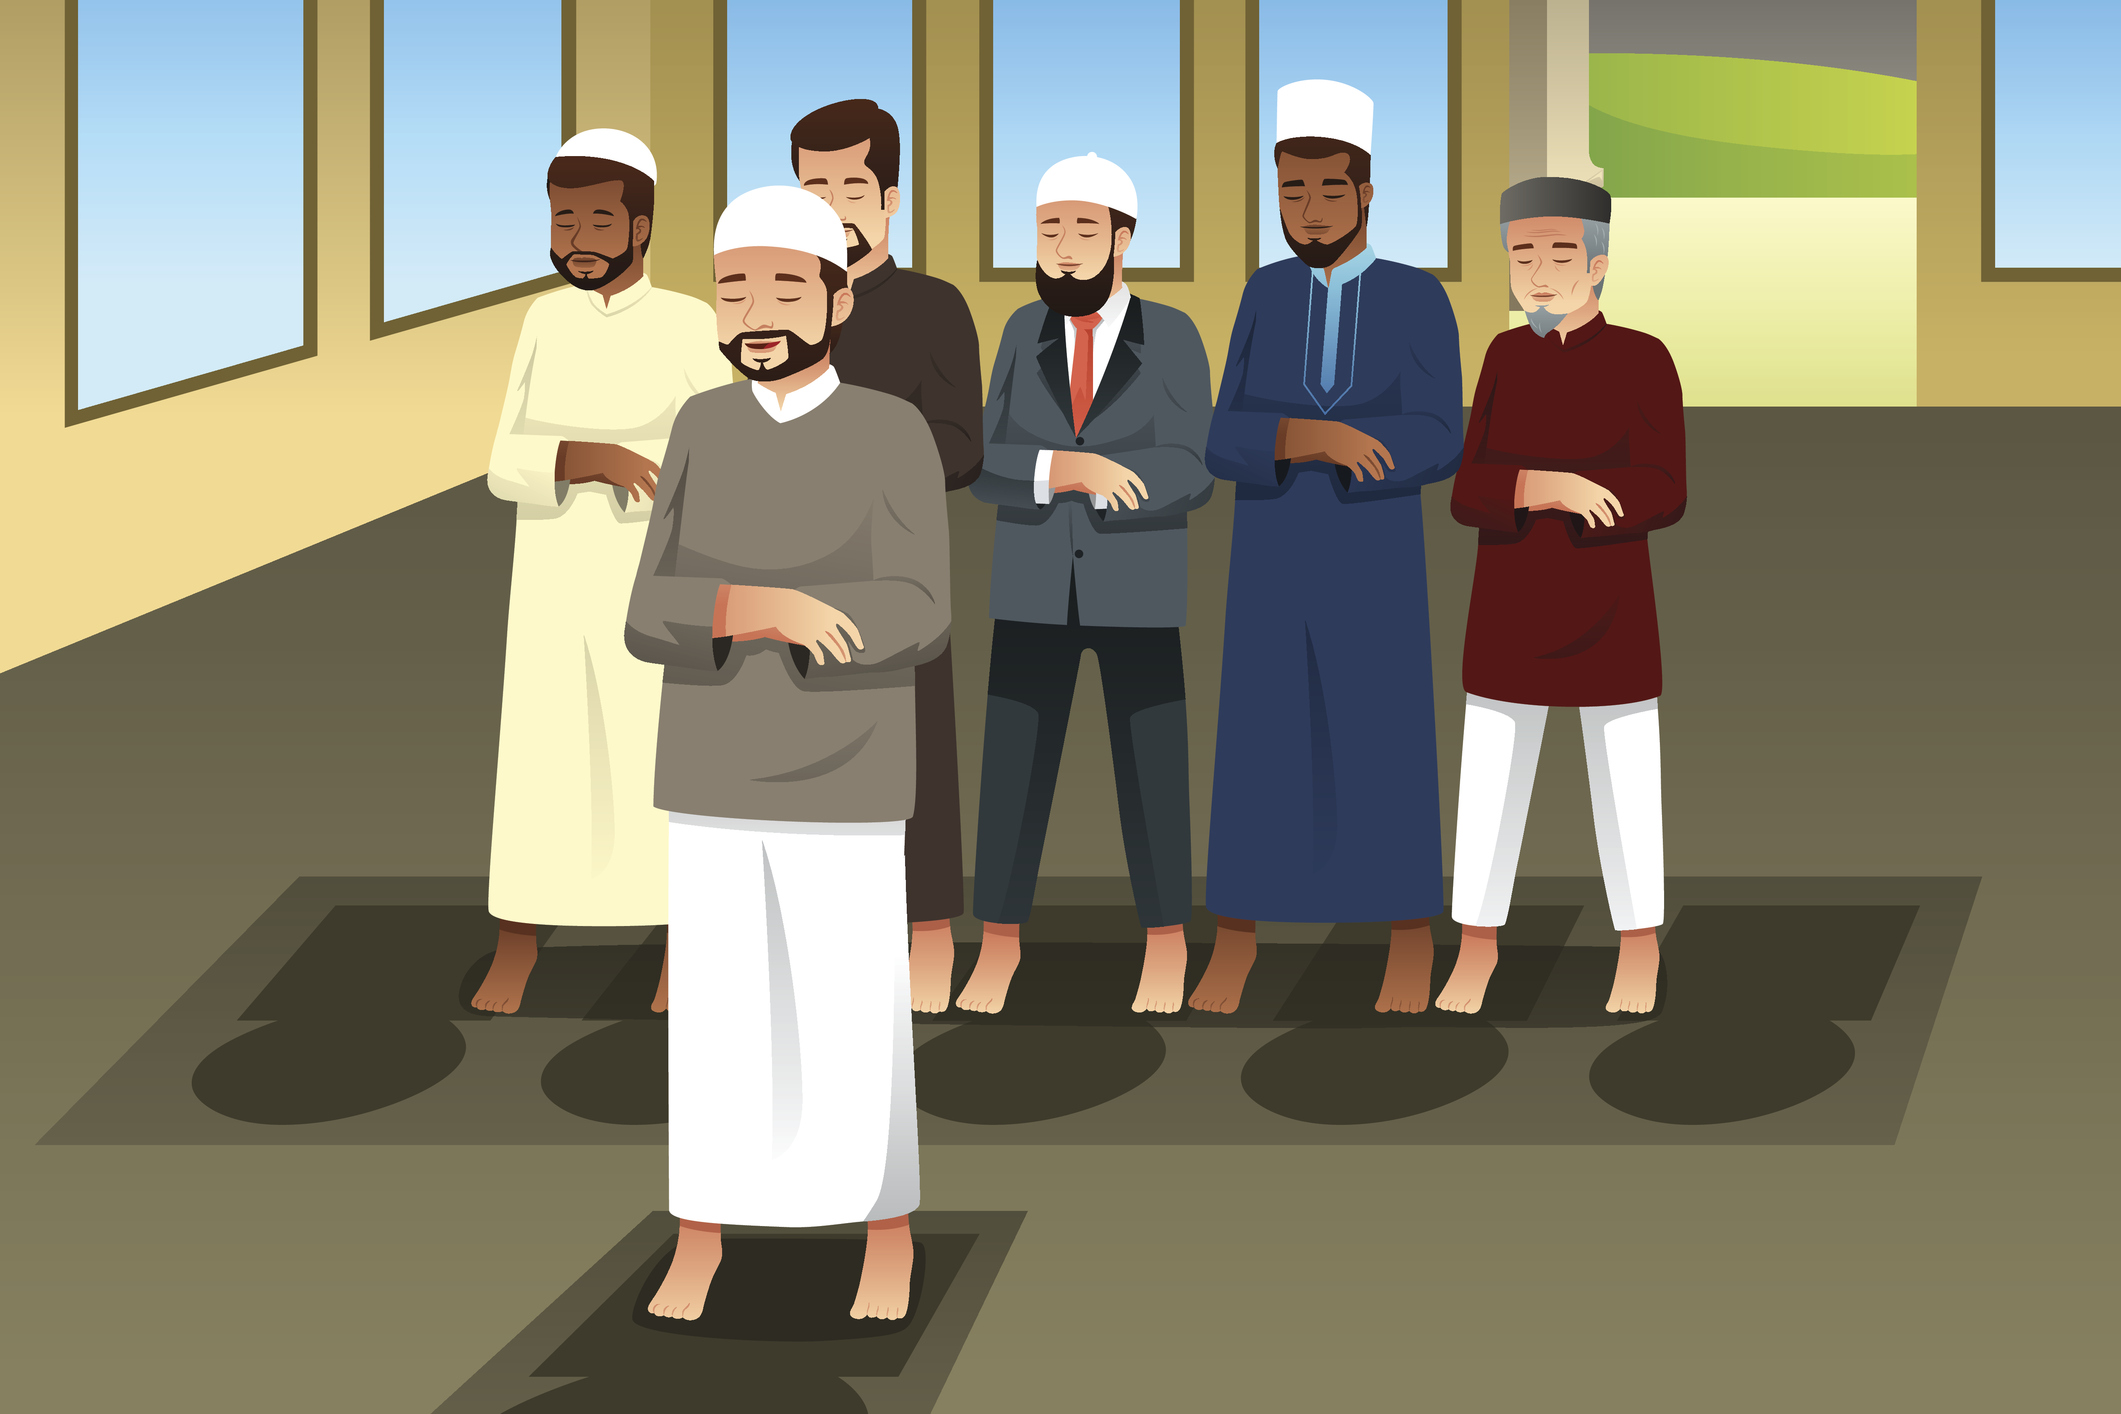 Намаз джамаатом имам. Мусульмане иллюстрация. Мусульмане молятся в мечети. Мужчина в мечети. Мечеть для имама рисунок.